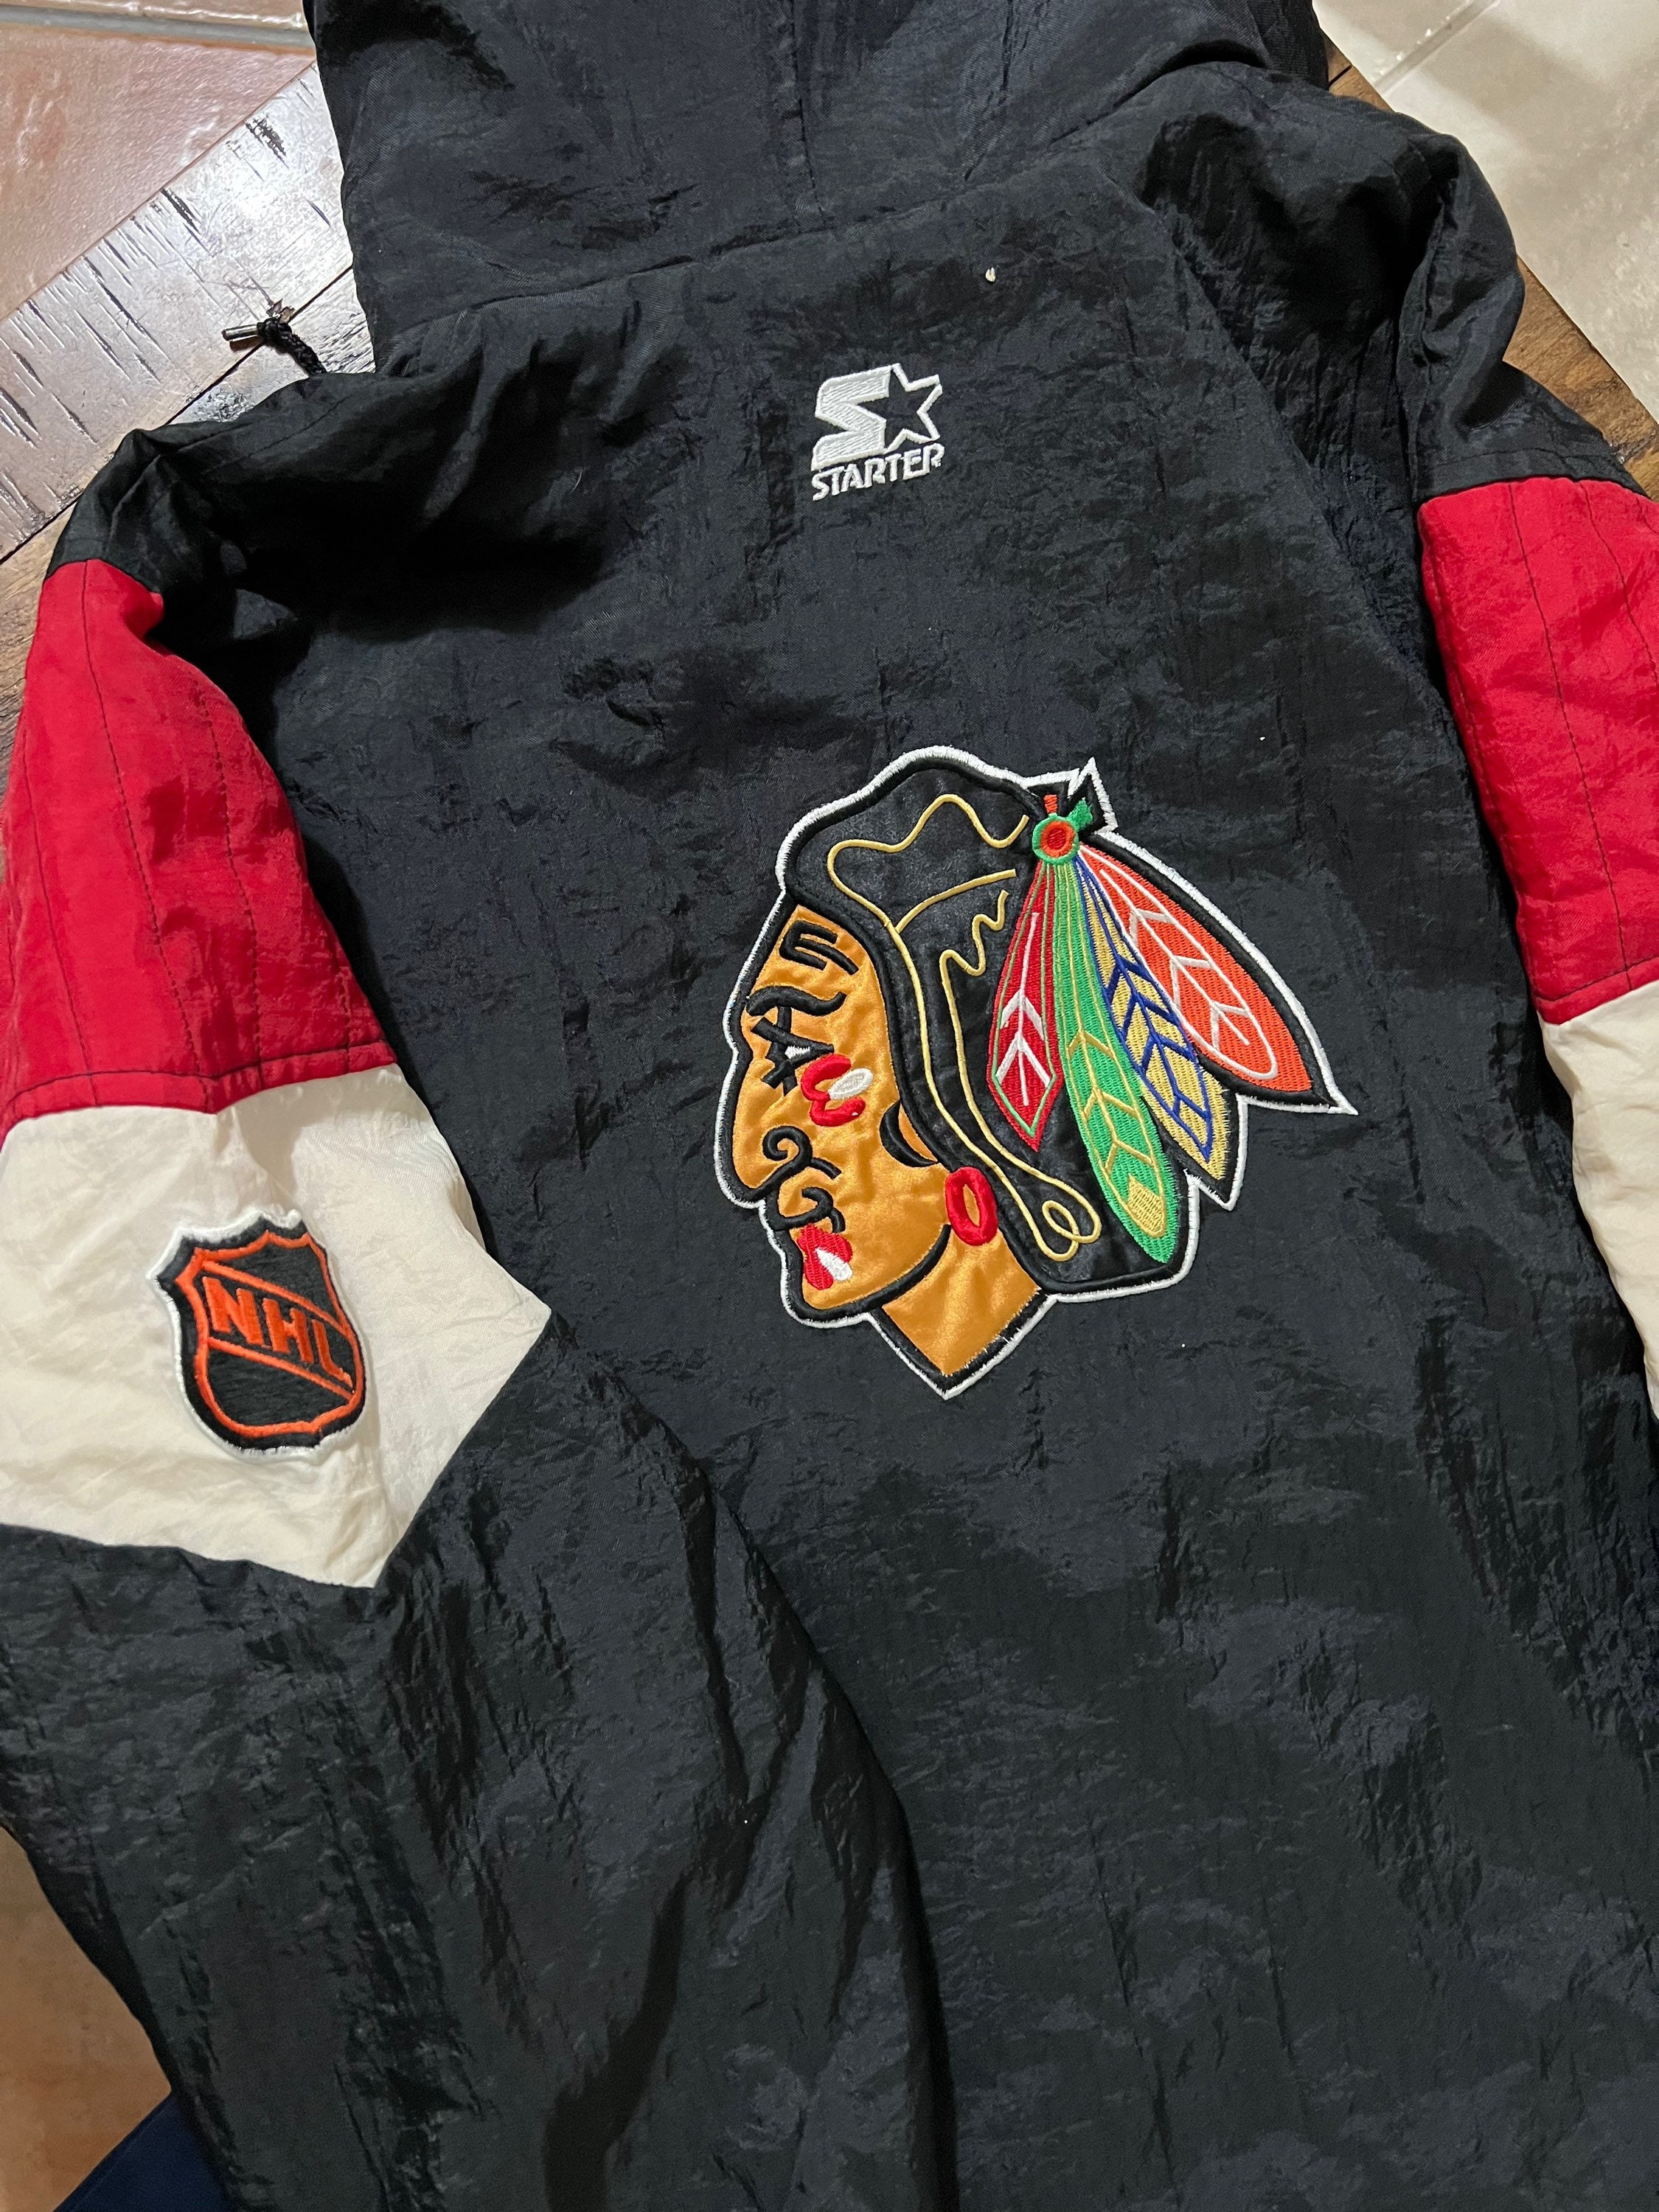 Lostboysvintage Vintage 1990s Chicago Blackhawks CCM NHL Hockey Jersey / Sportswear / NHL Fan Gear / Athleisure / Throwback / Retro / Streetwear / Chicago